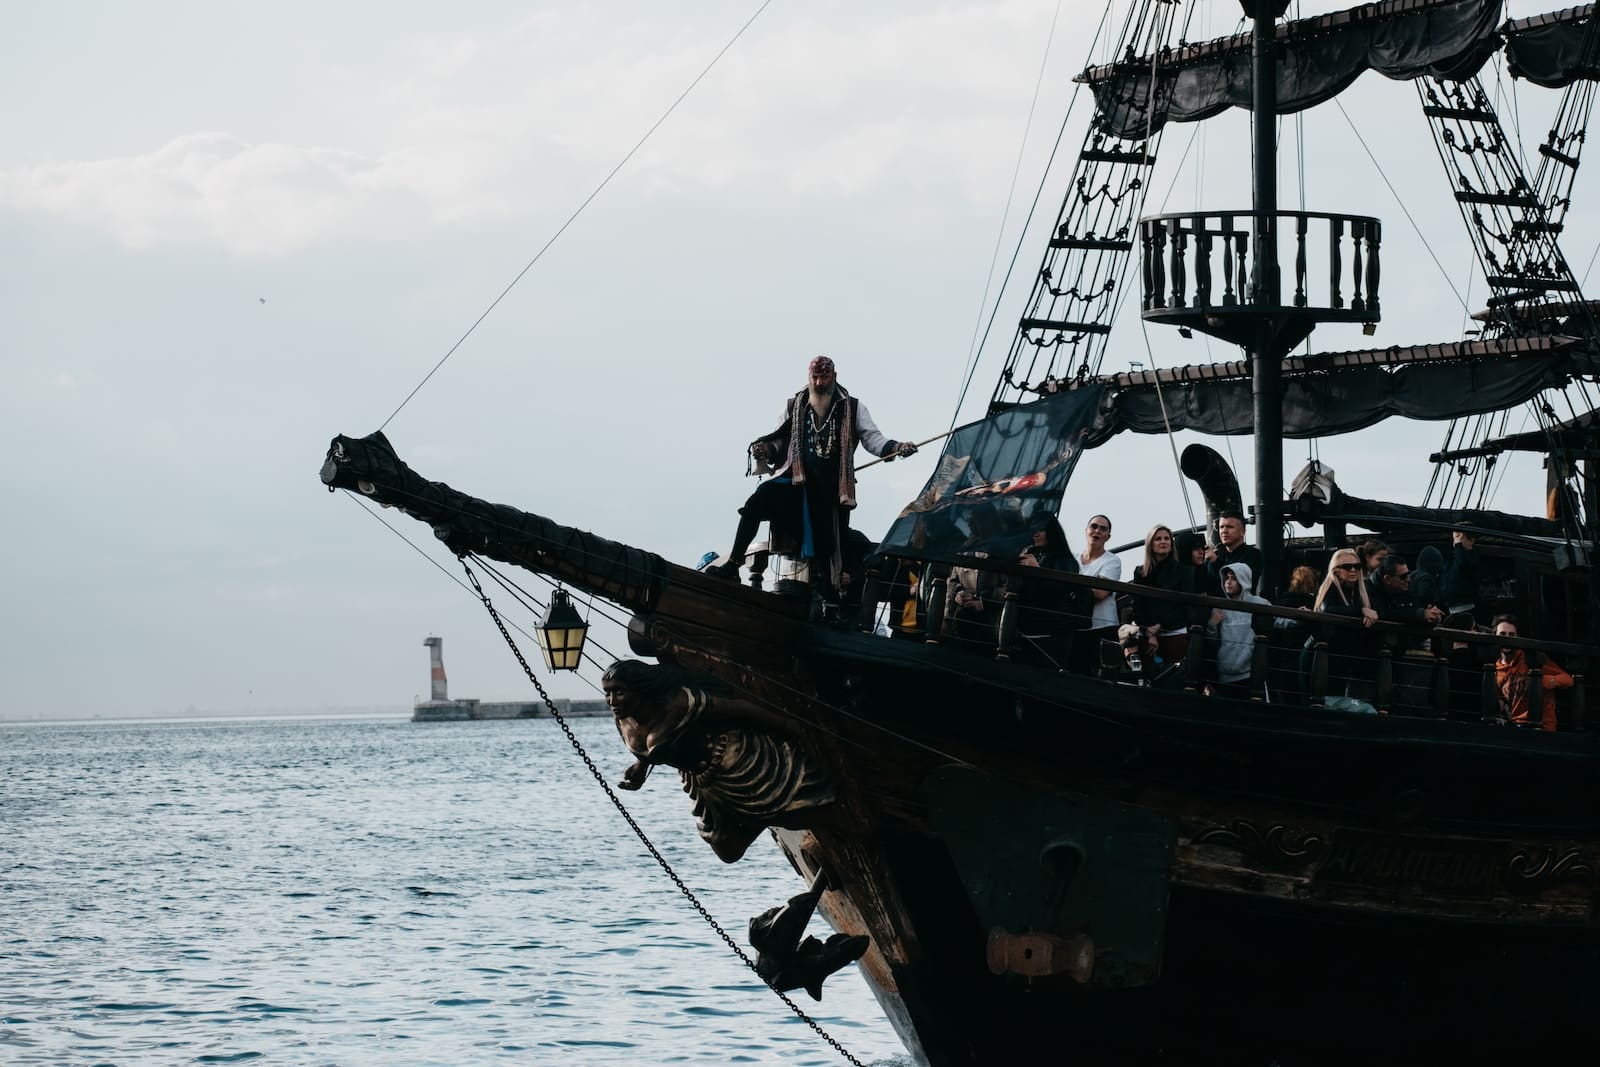 piraten